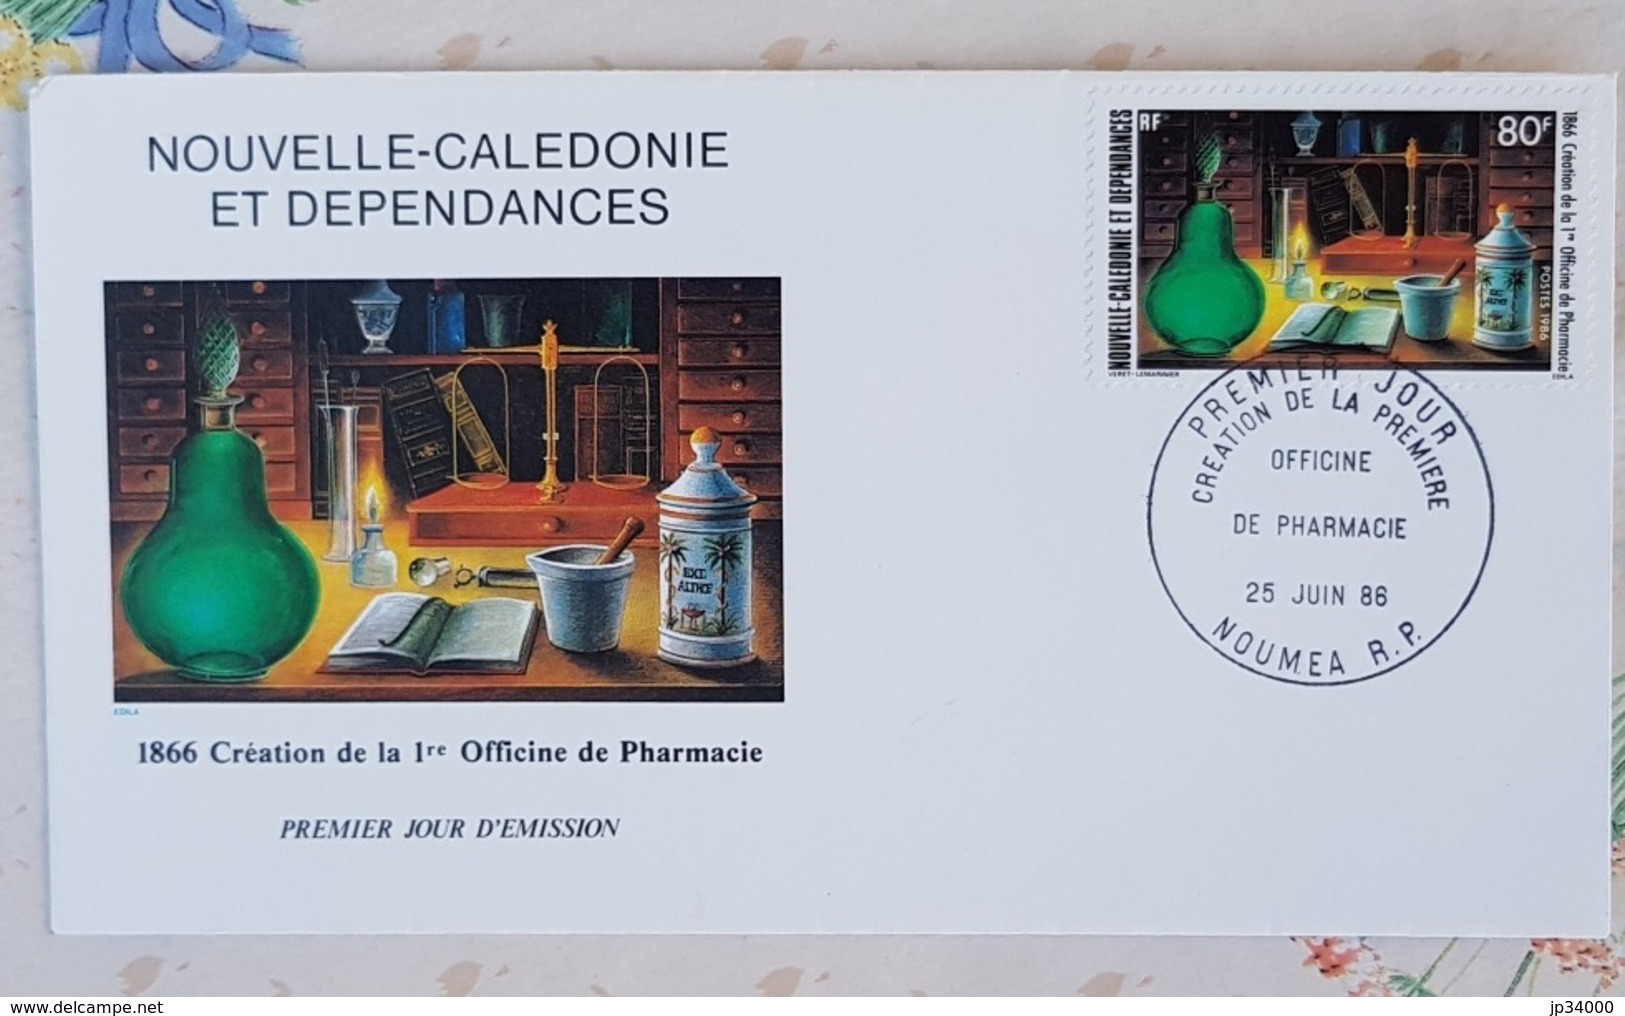 NOUVELLE CALEDONIE Phamarcie, Medecine,Yvert N°519 Officine De Pharmacie FDC, Enveloppe 1er Jour - Pharmacy